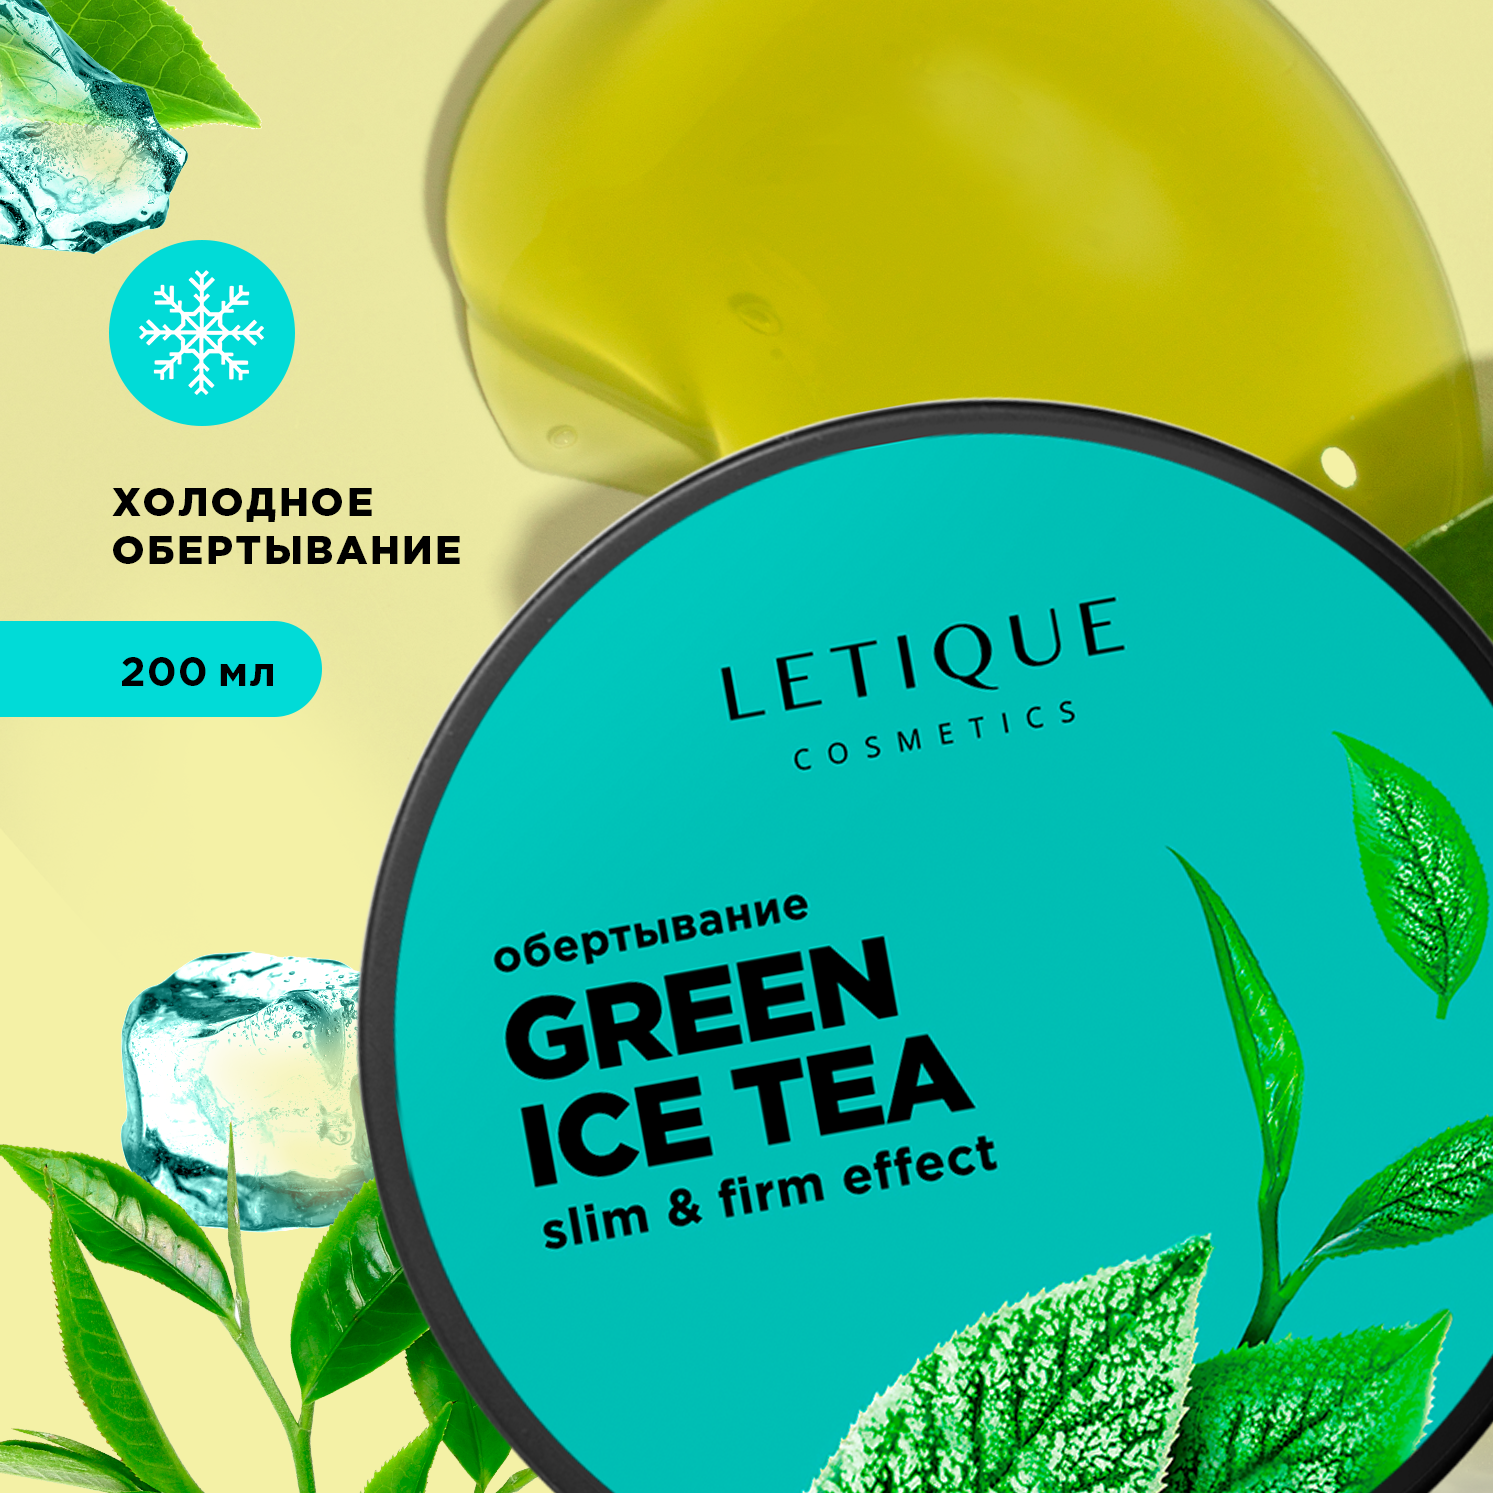 Обертывание холодное для тела Letique Cosmetics Green Ice Tea комбинированное холодное оружие